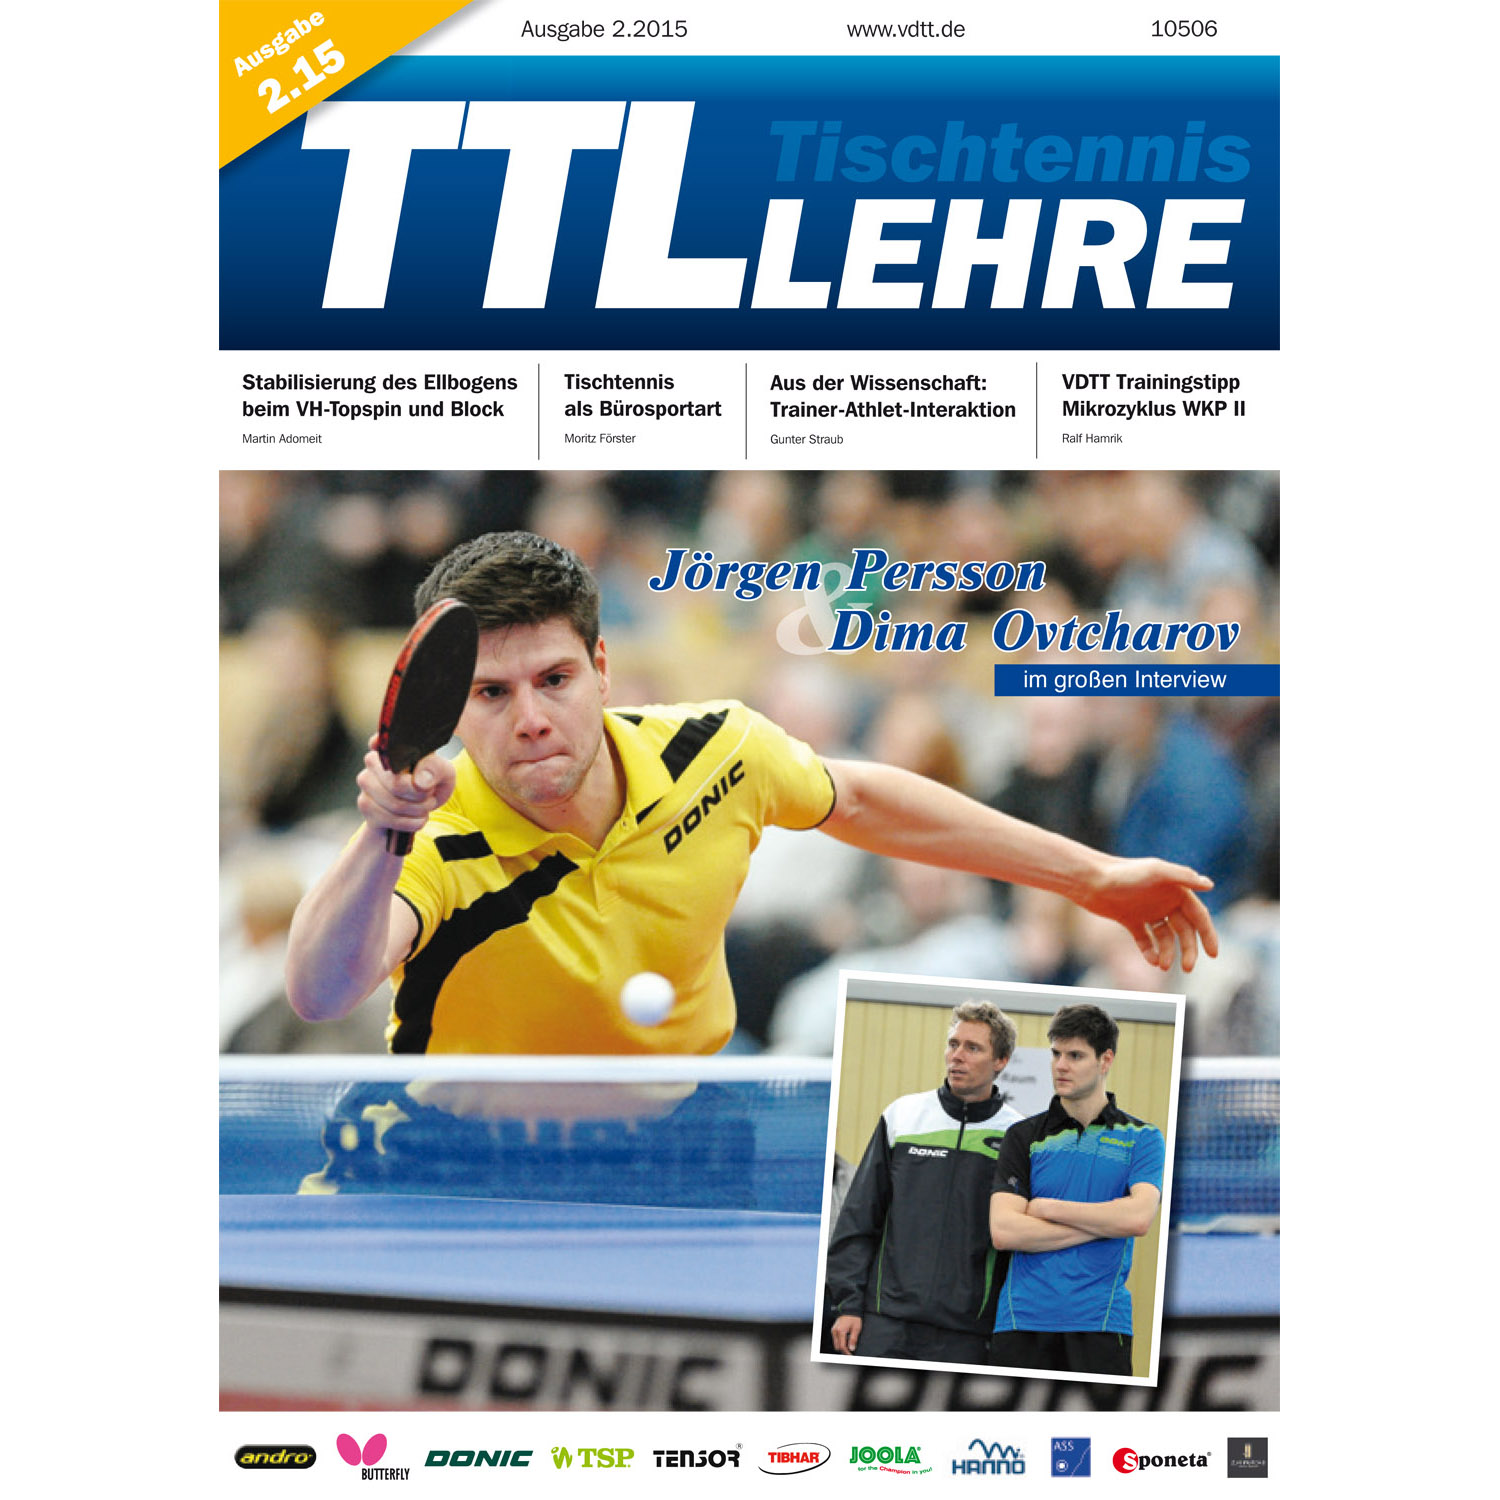 VDTT-Zeitschrift Tischtennislehre - Ausgabe: 2015-02